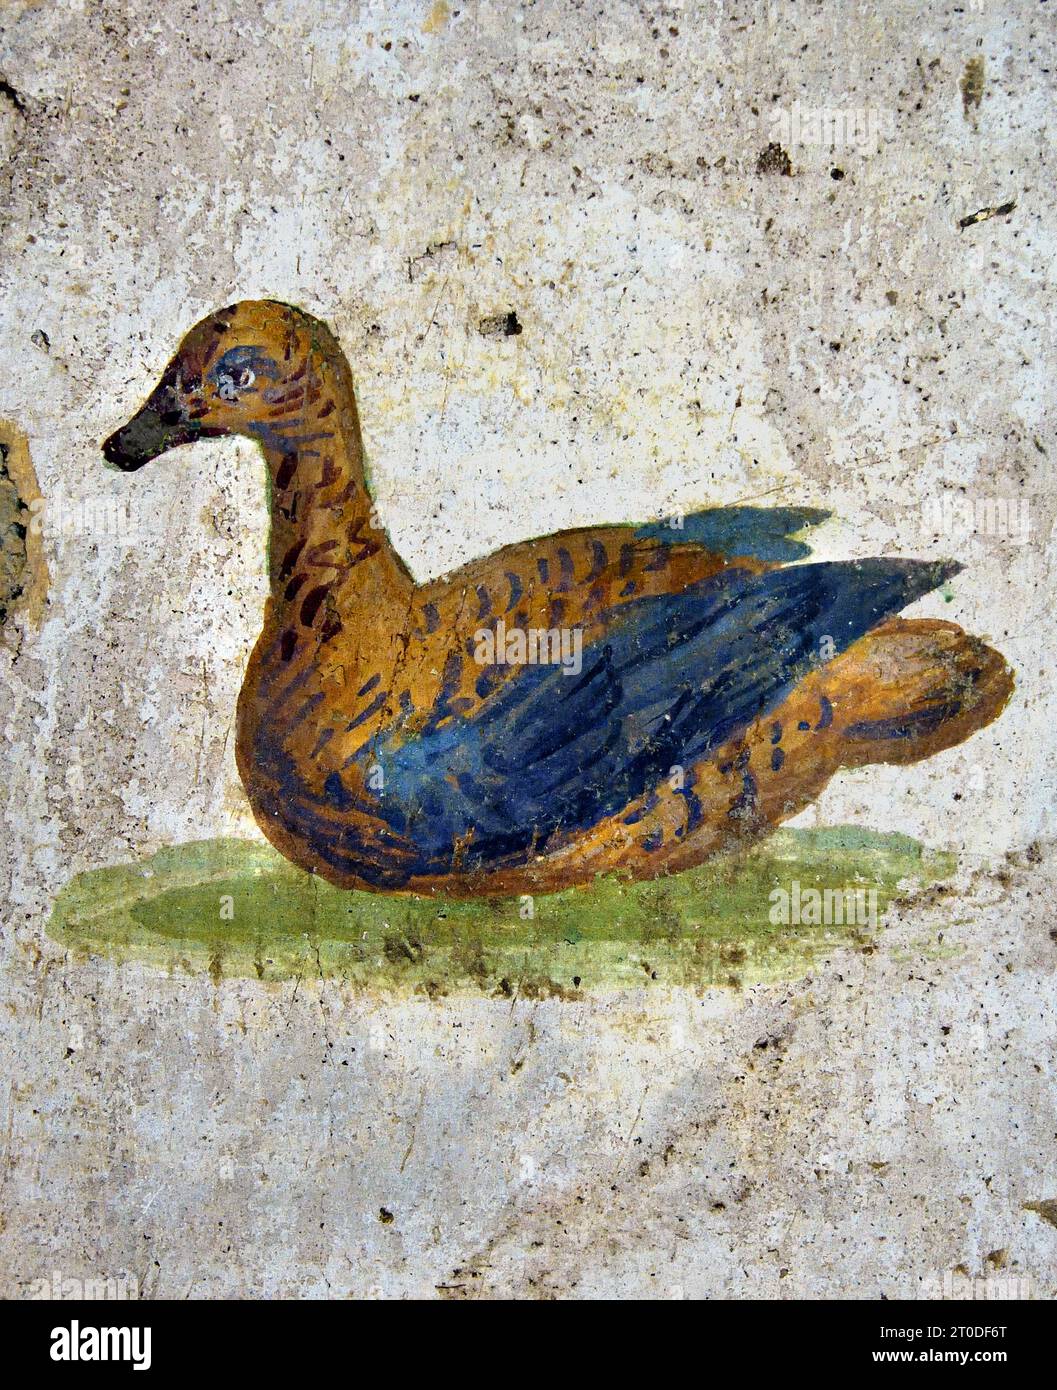 Uccelli - uccelli 10-45 d.C. la città romana di fresco Pompei si trova vicino a Napoli, nella regione Campania. Pompei fu sepolta sotto 4-6 m di cenere vulcanica e pomice nell'eruzione del Vesuvio nel 79 d.C. Italia Foto Stock